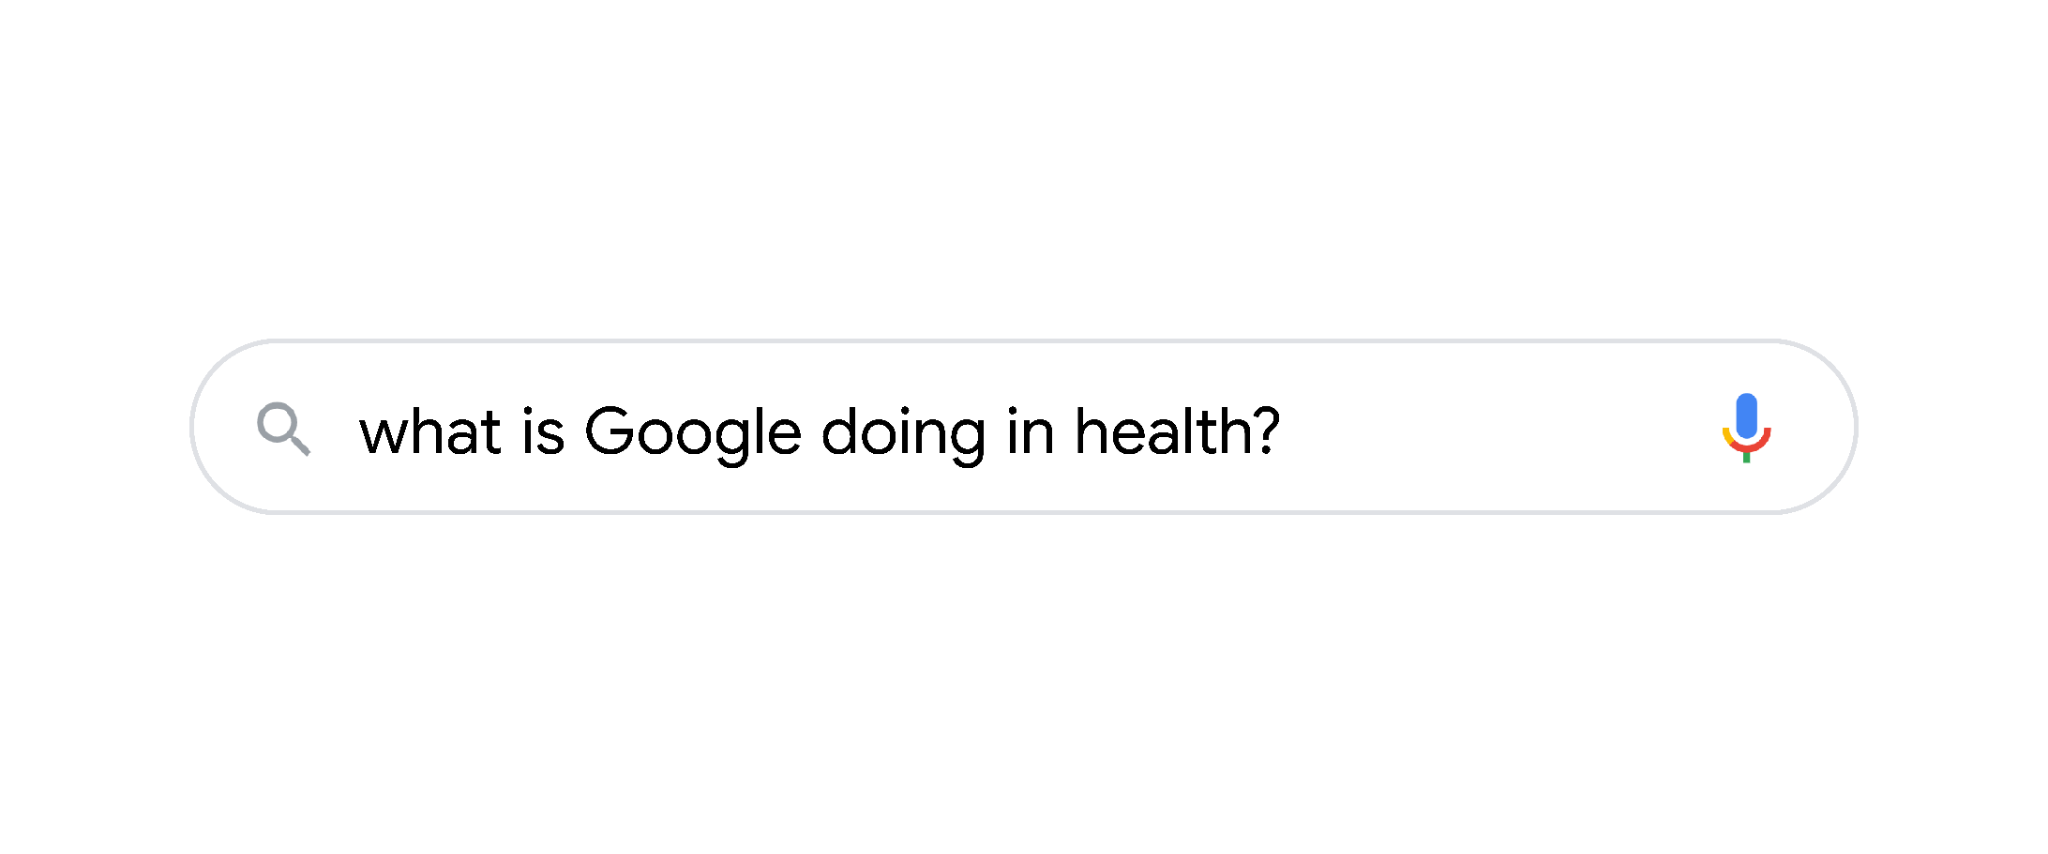 Sự kiện Google Health - Kiểm tra sức khoẻ: Cách Google giúp mọi người sống lành mạnh hơn